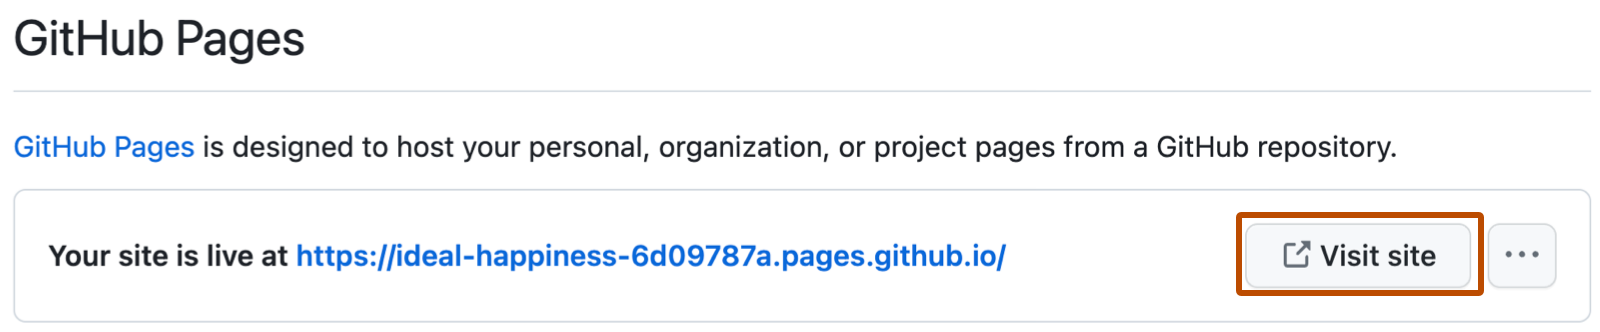 Снимок экрана: сообщение подтверждения для GitHub Pages с URL-адресом сайта. Справа от длинного синего URL-адреса кнопка с надписью "Посетить сайт" выделена темно-оранжевым цветом.